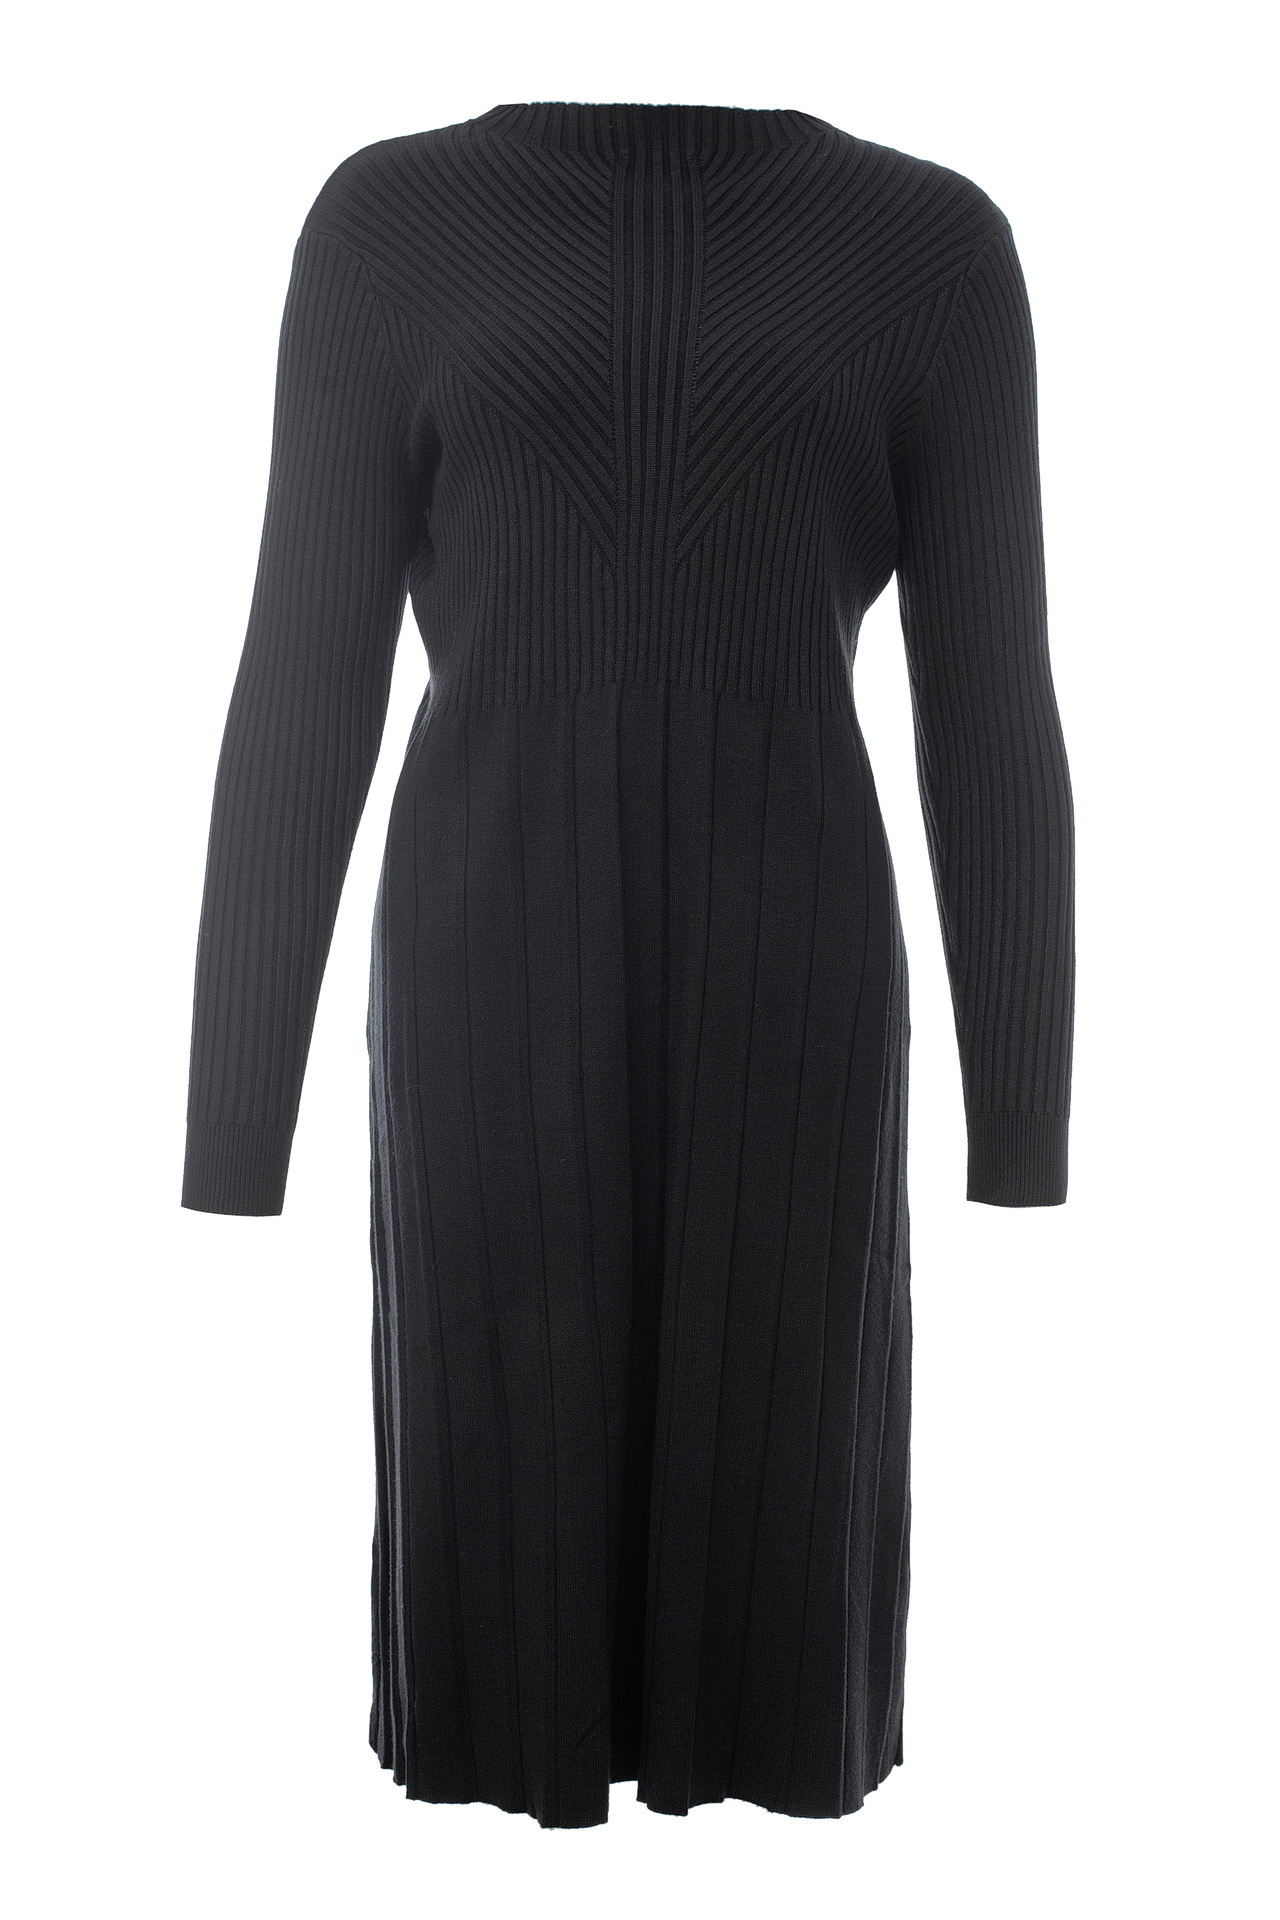 Одежда женская Платье LETICIA MILANO (22102018/18.1). Купить за 6900 руб.